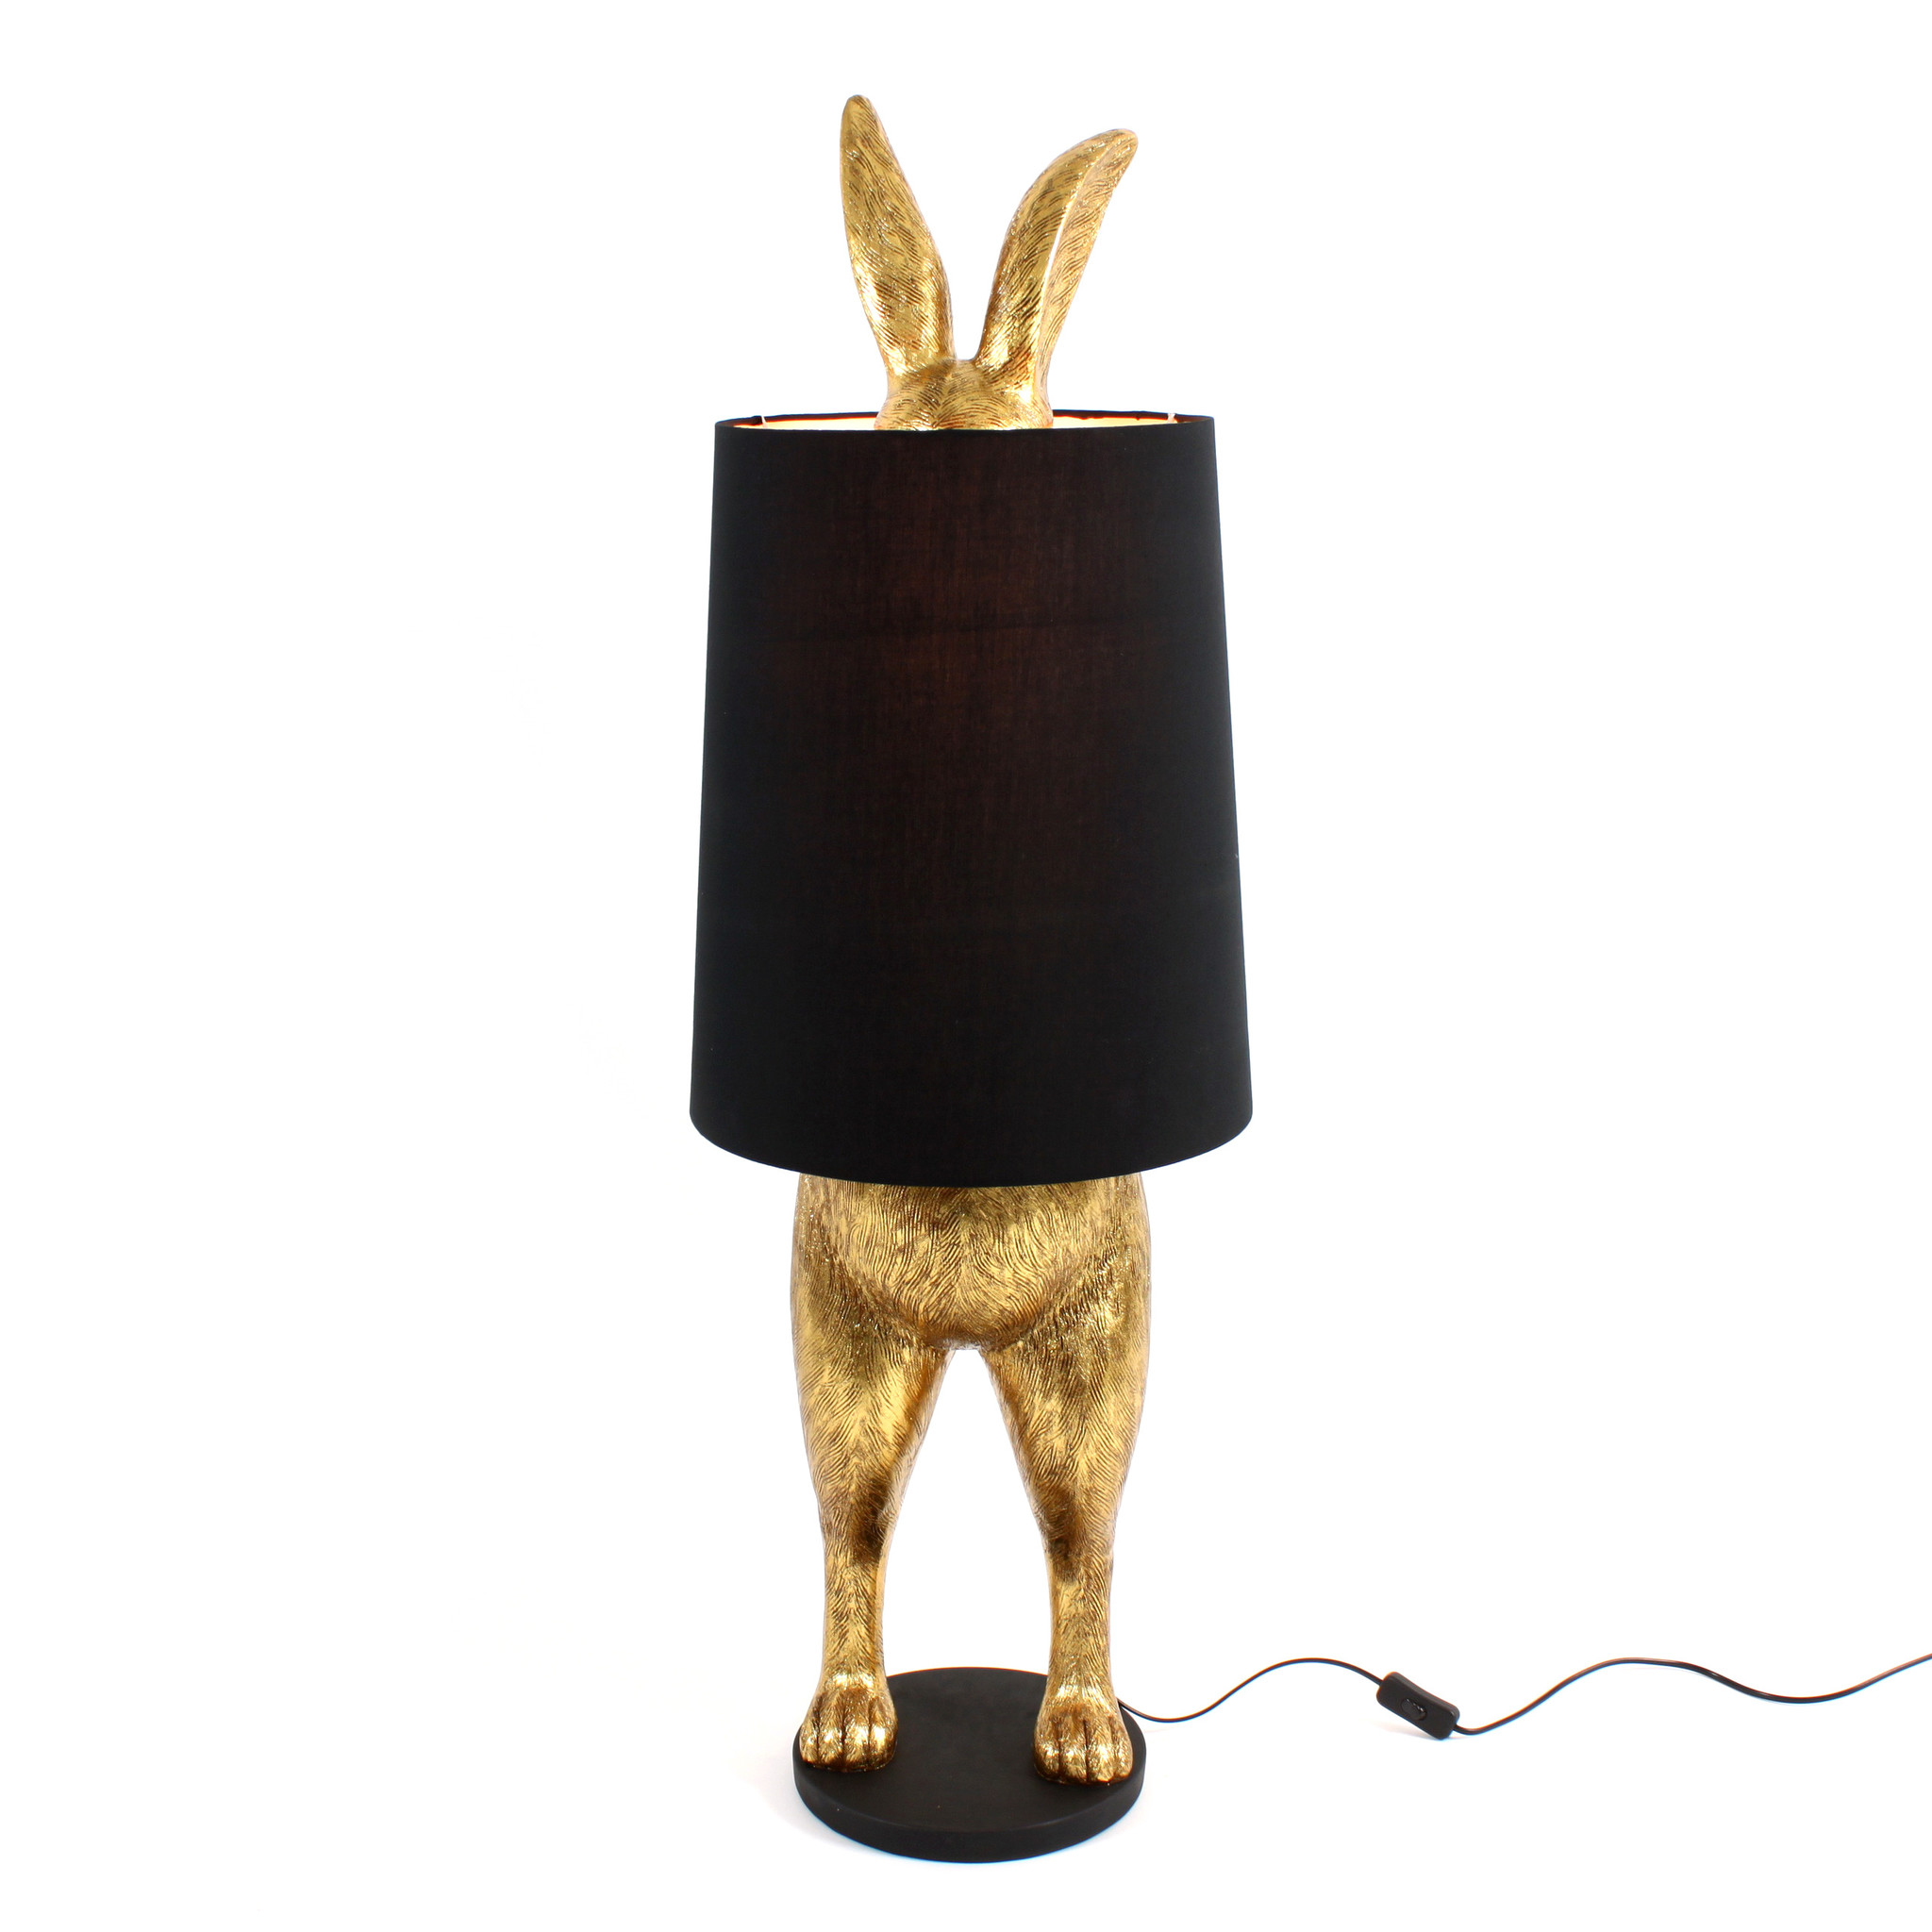 Verstopt konijn "Hiding Rabbit" design lamp